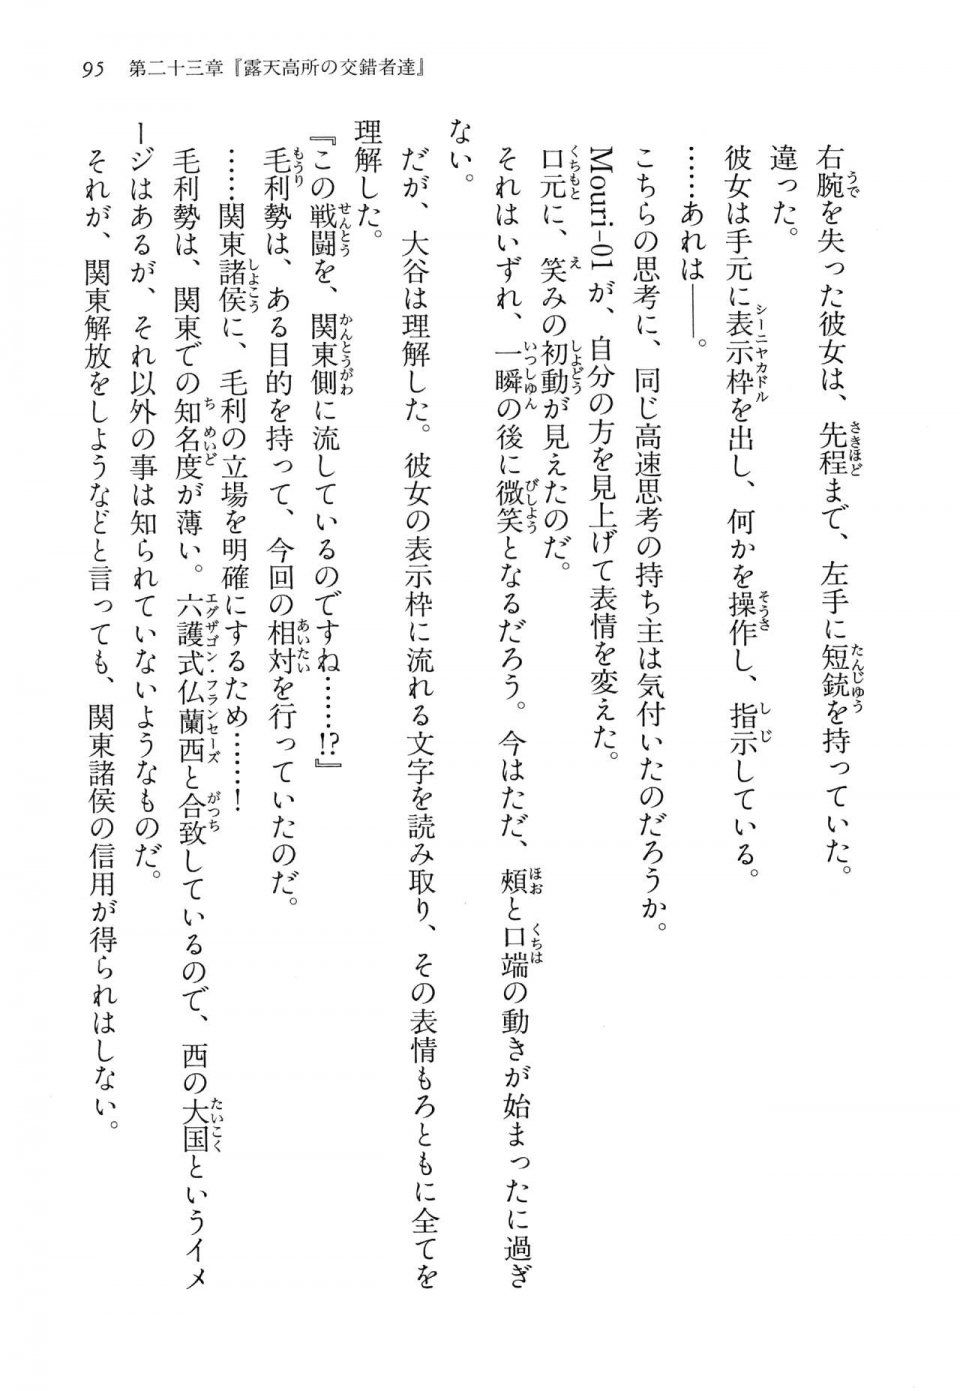 Kyoukai Senjou no Horizon LN Vol 14(6B) - Photo #95